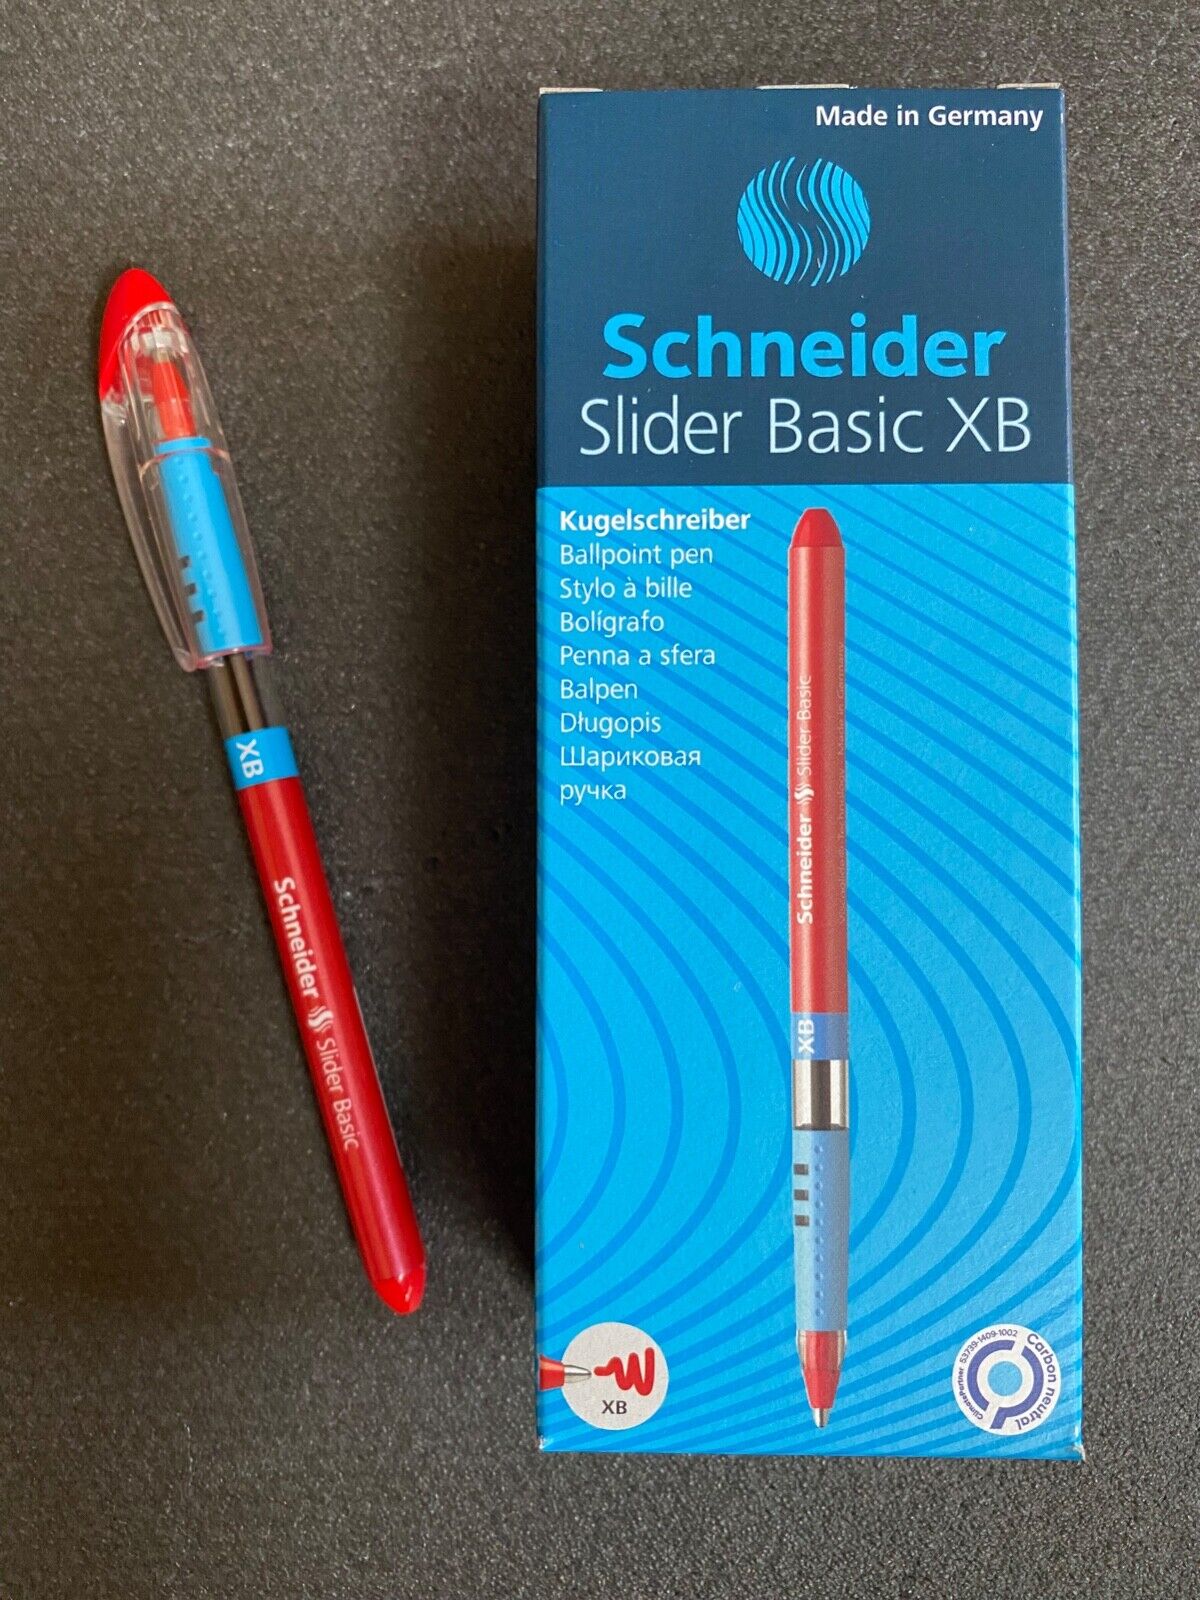 Schneider Slider Basic XB rot 10 Stück Ballpoint Pen Kugelschreiber Neu in OVP